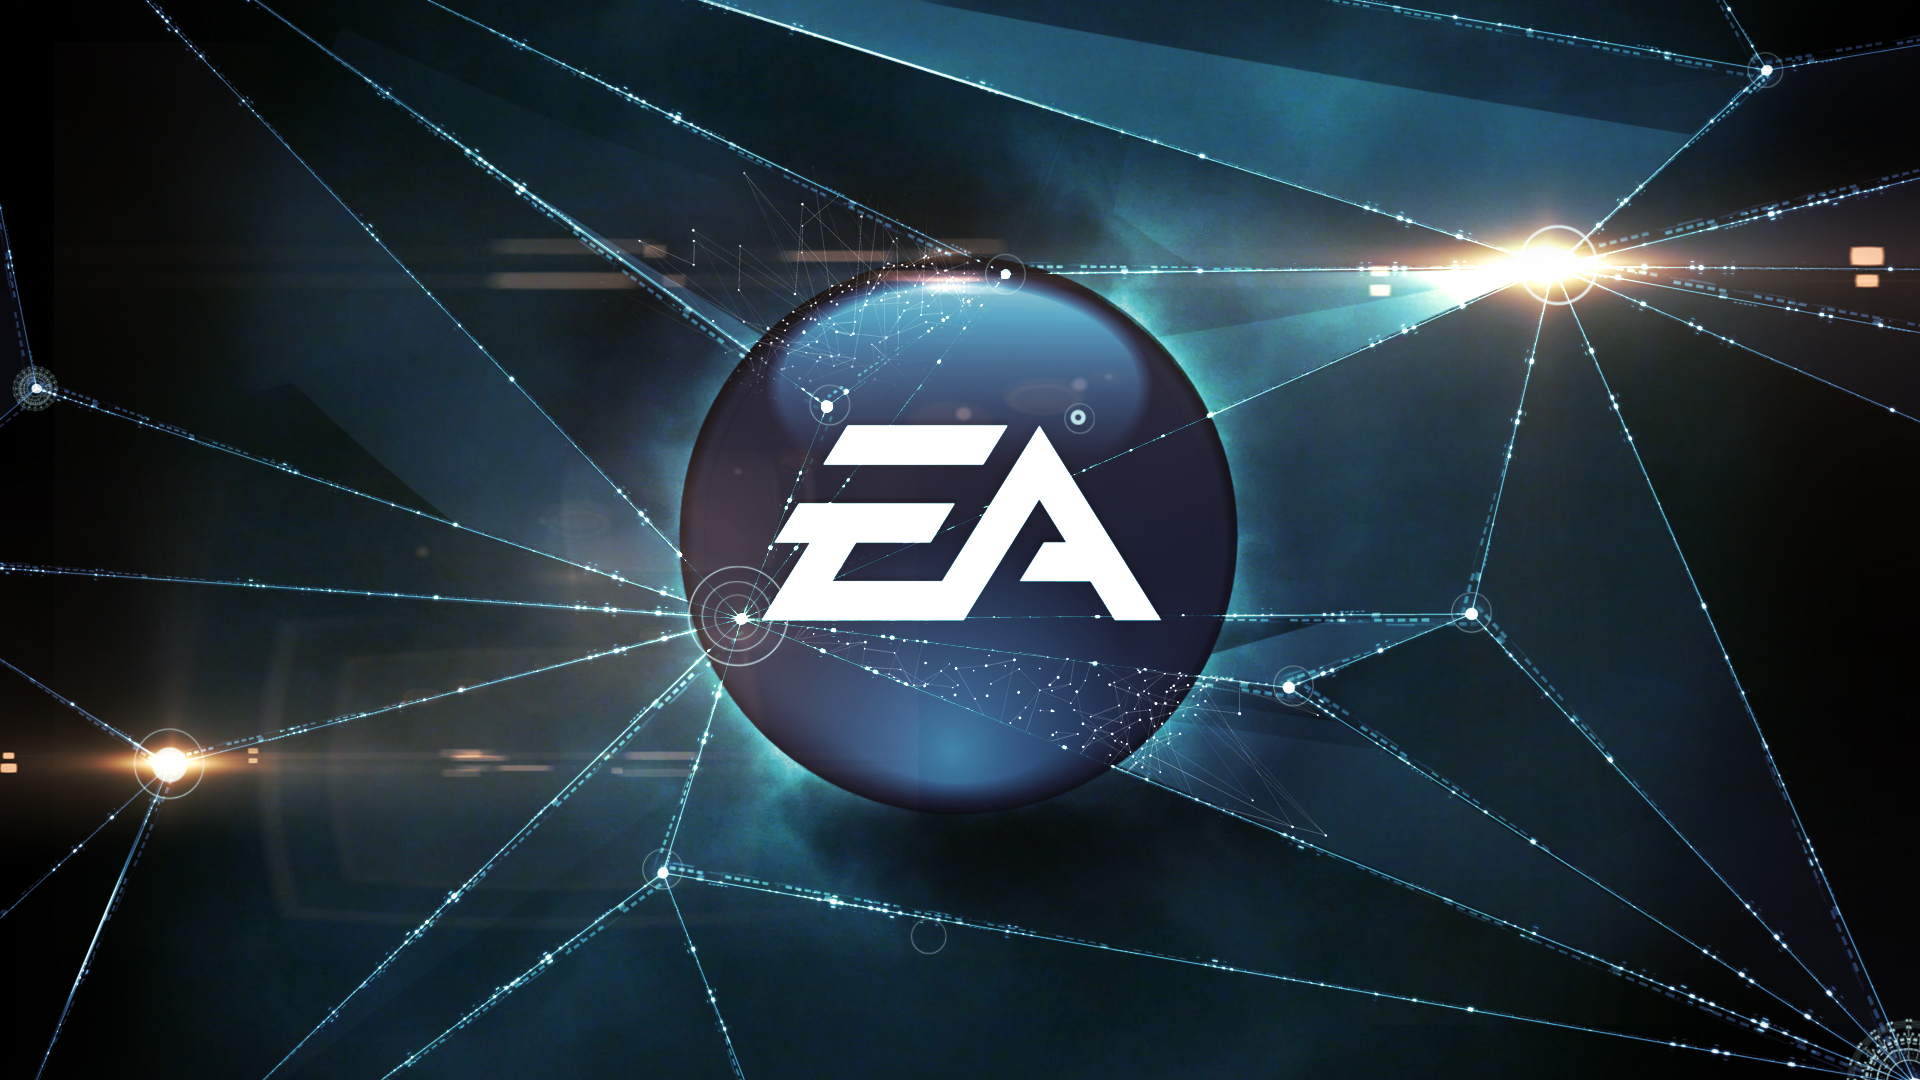 Electronic Arts / EA